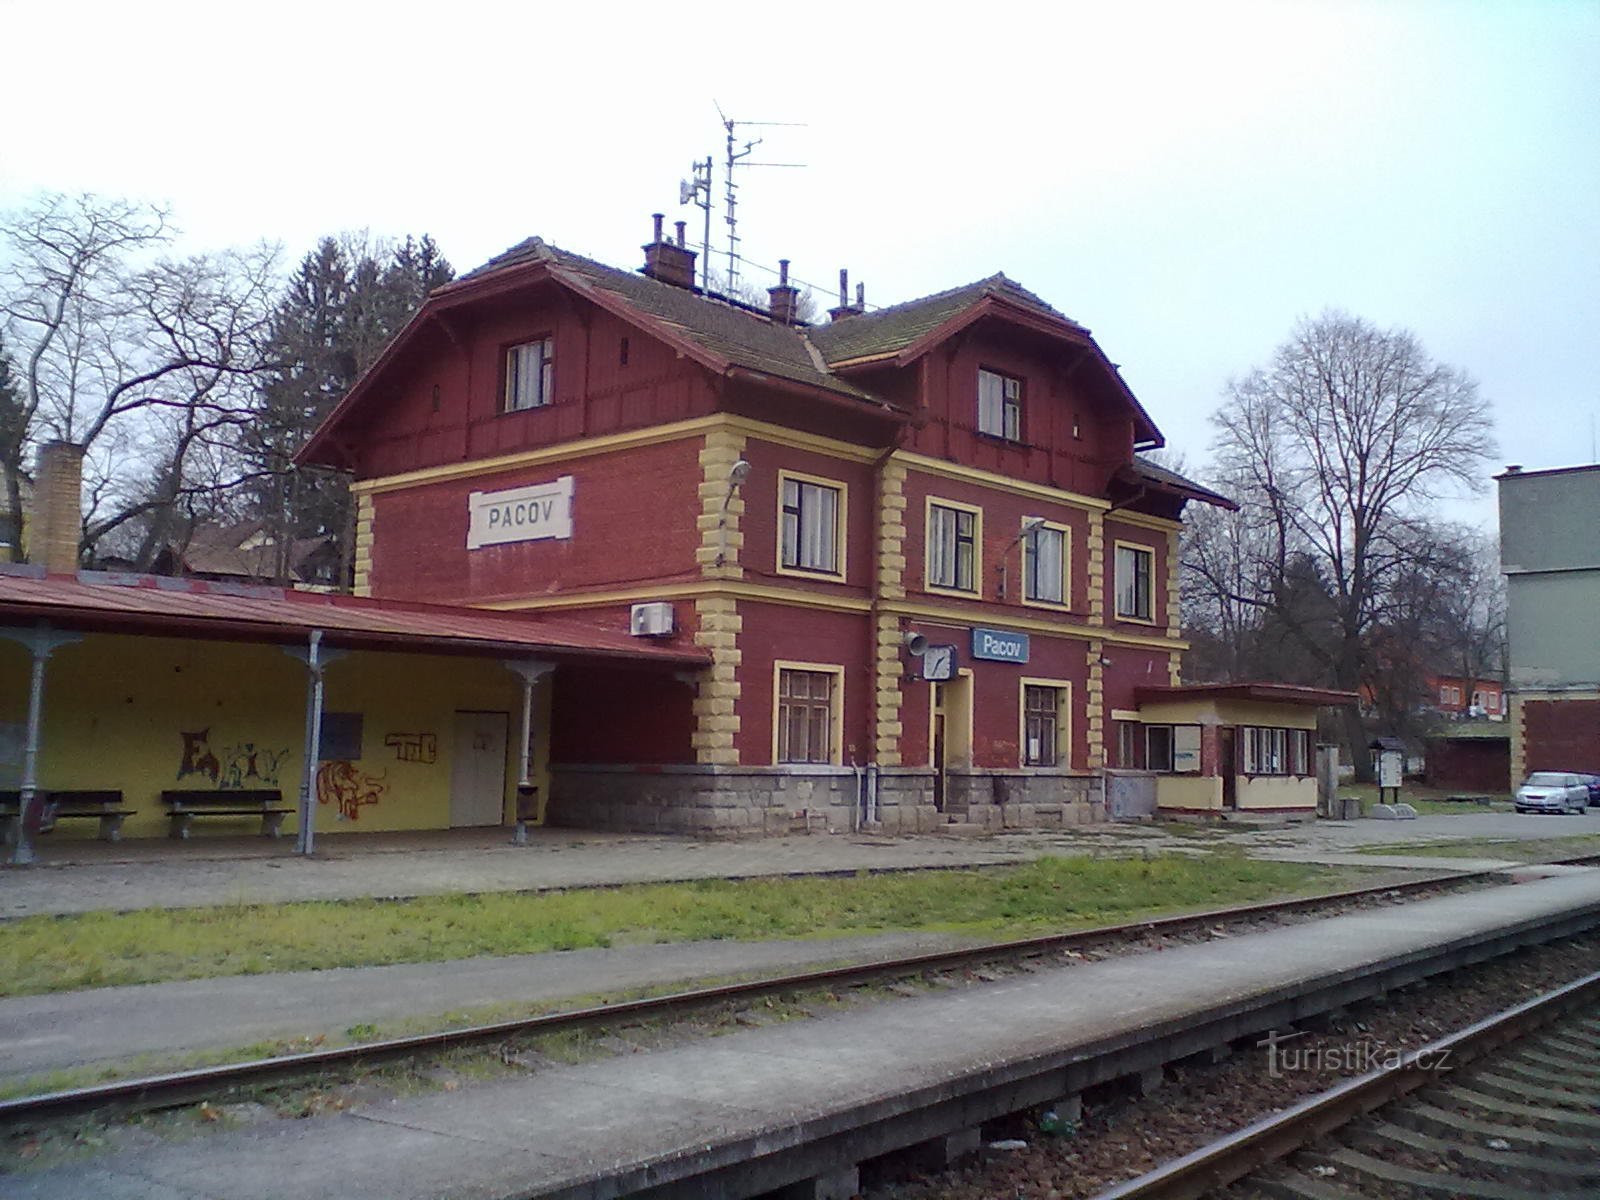 1. Bahnhof in Pacov - Ausgangs- und Endpunkt der Wallfahrt.